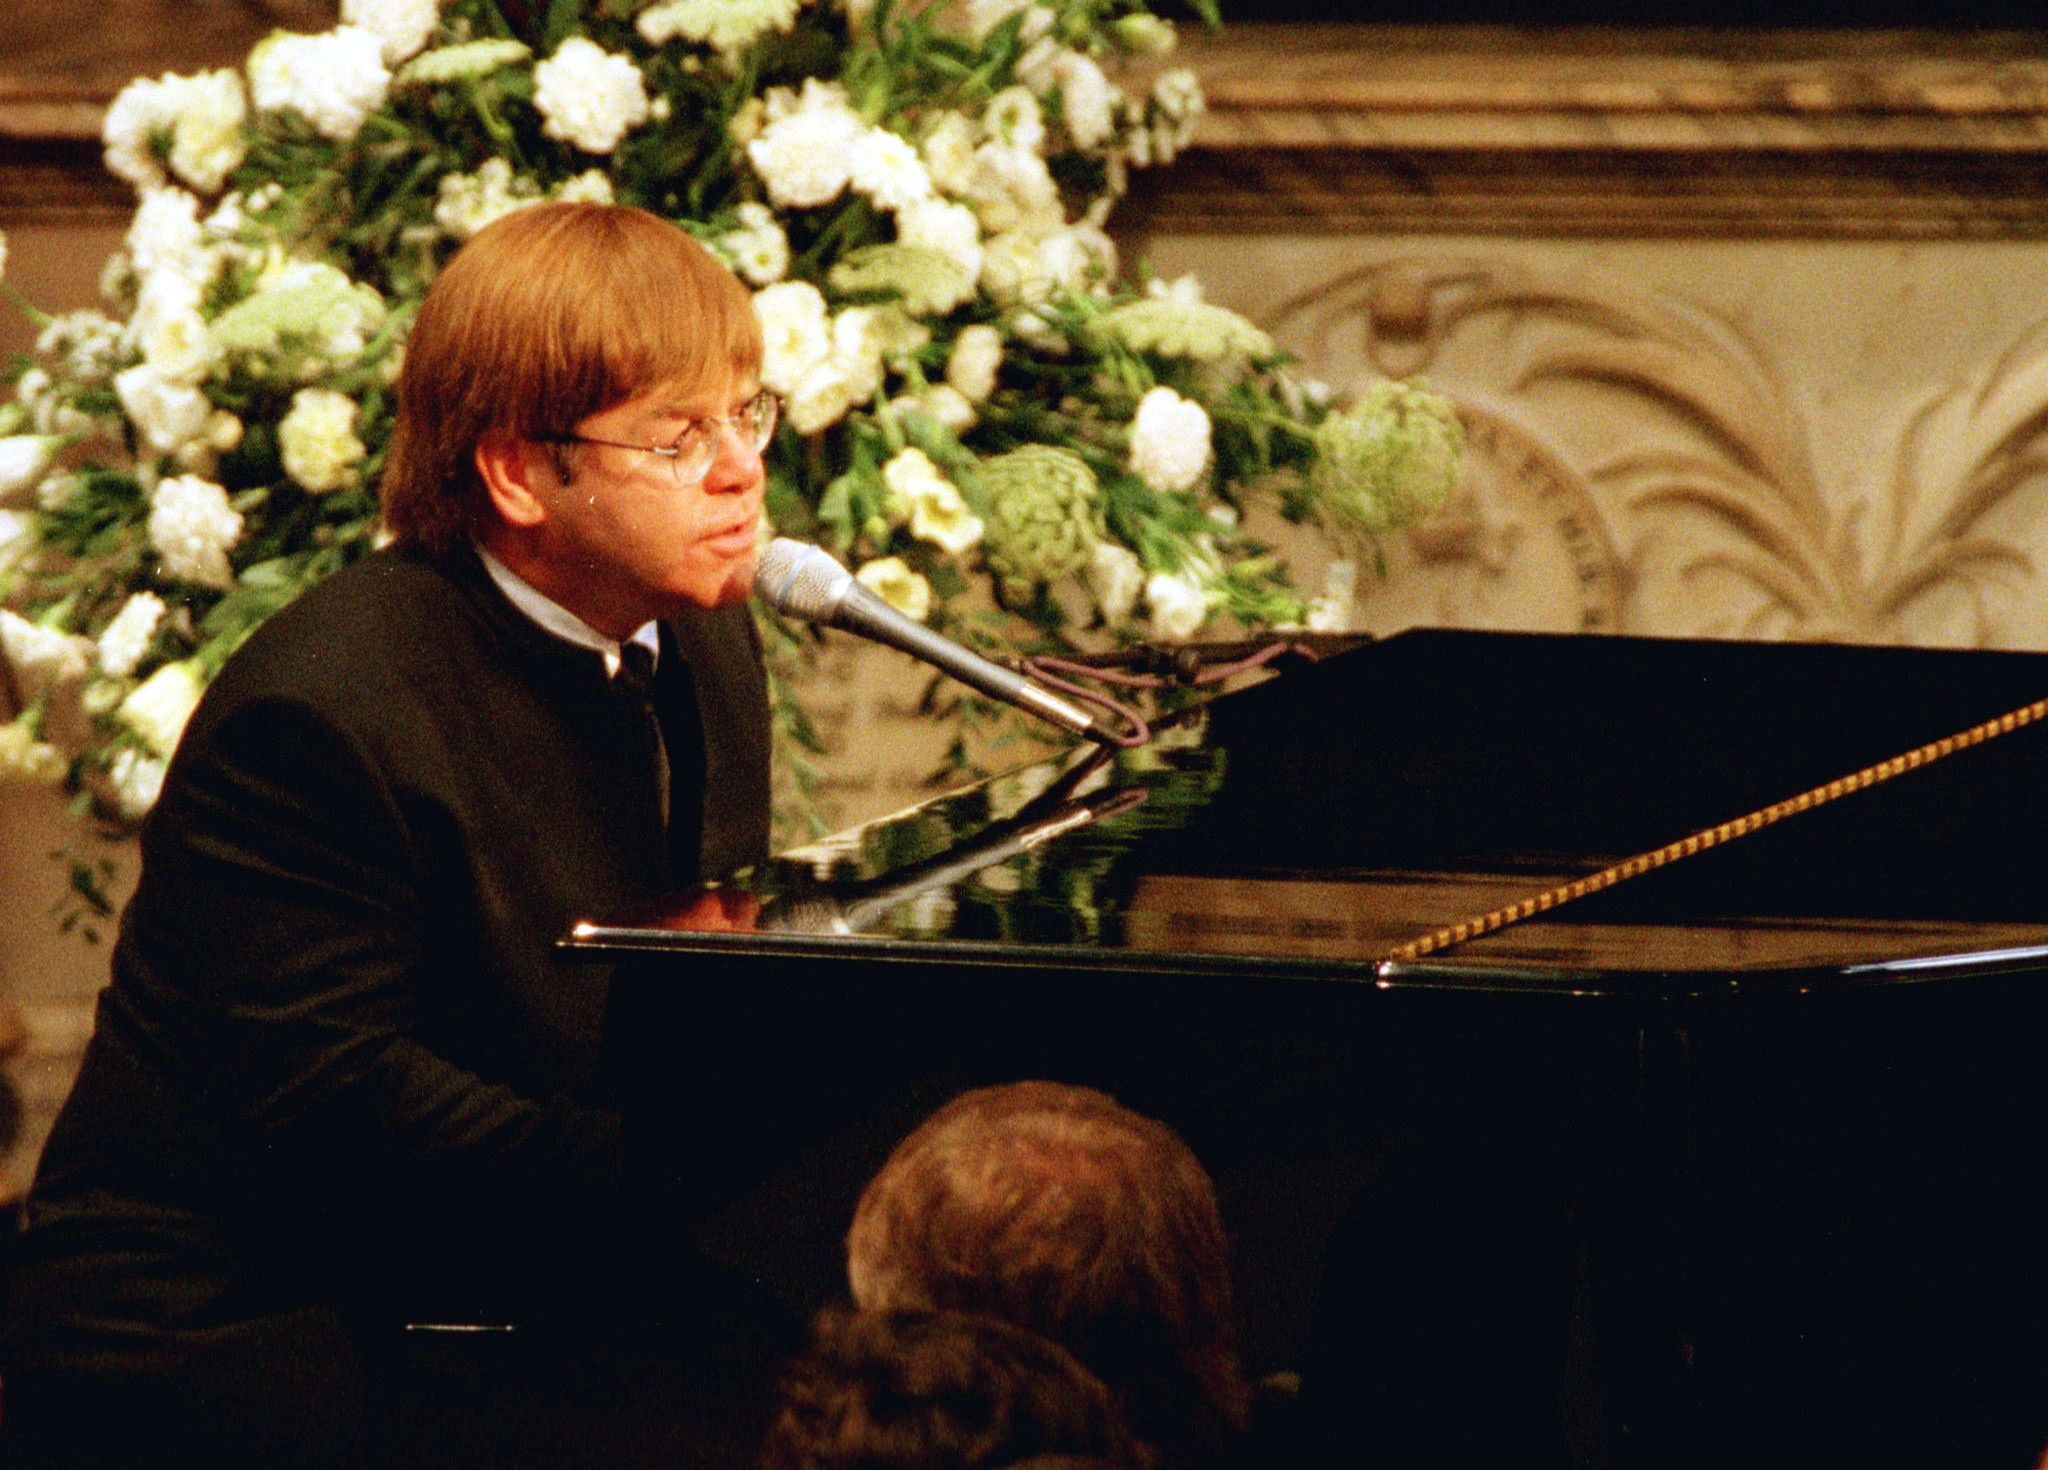 Abadia de Westminster pediu que Elton John tocasse no funeral da princesa Diana, revelam documentos